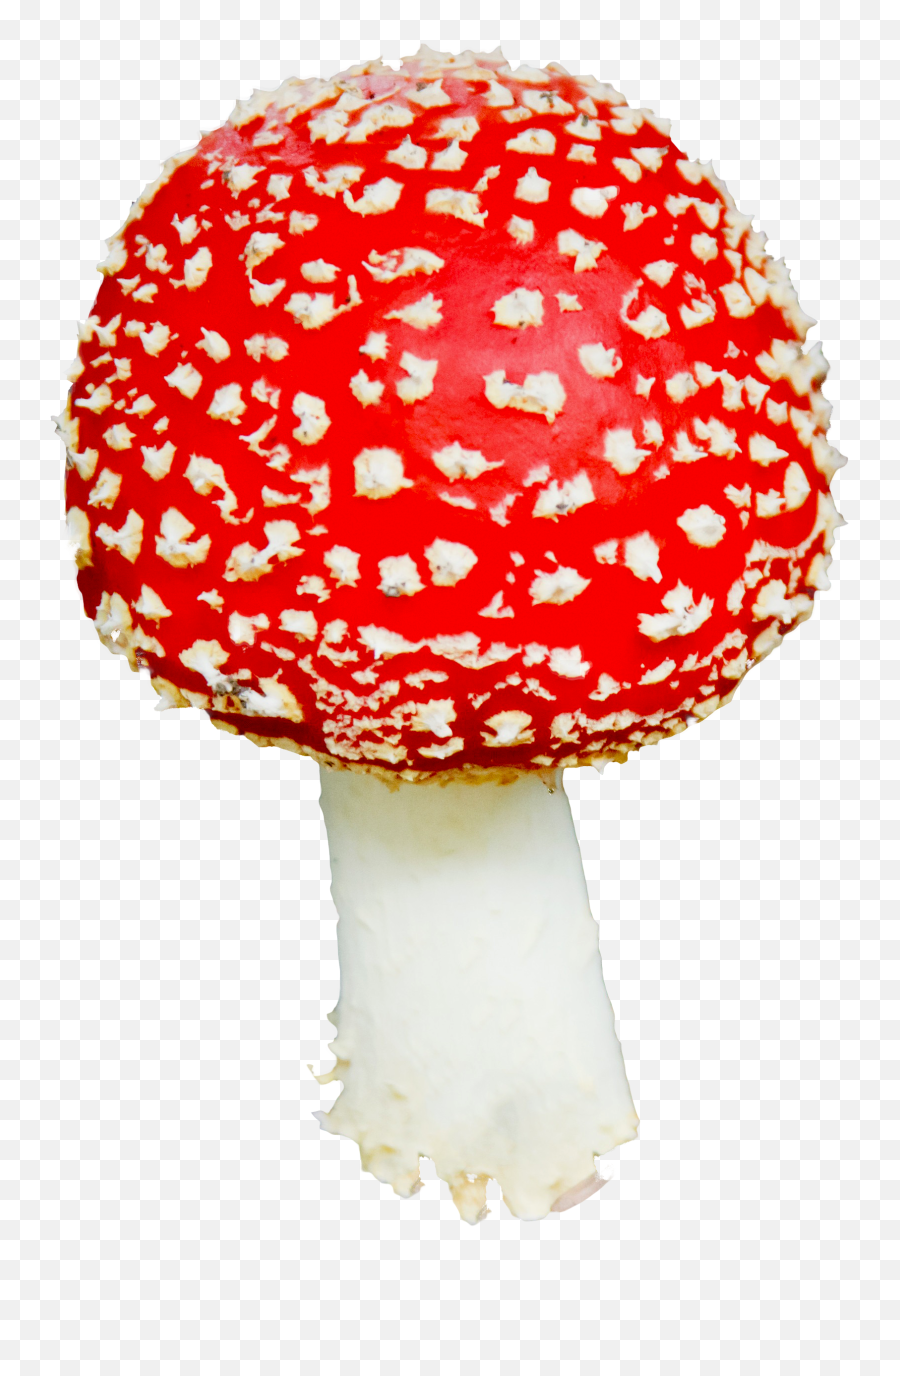 Mushroom Png Image Clipart Vectors